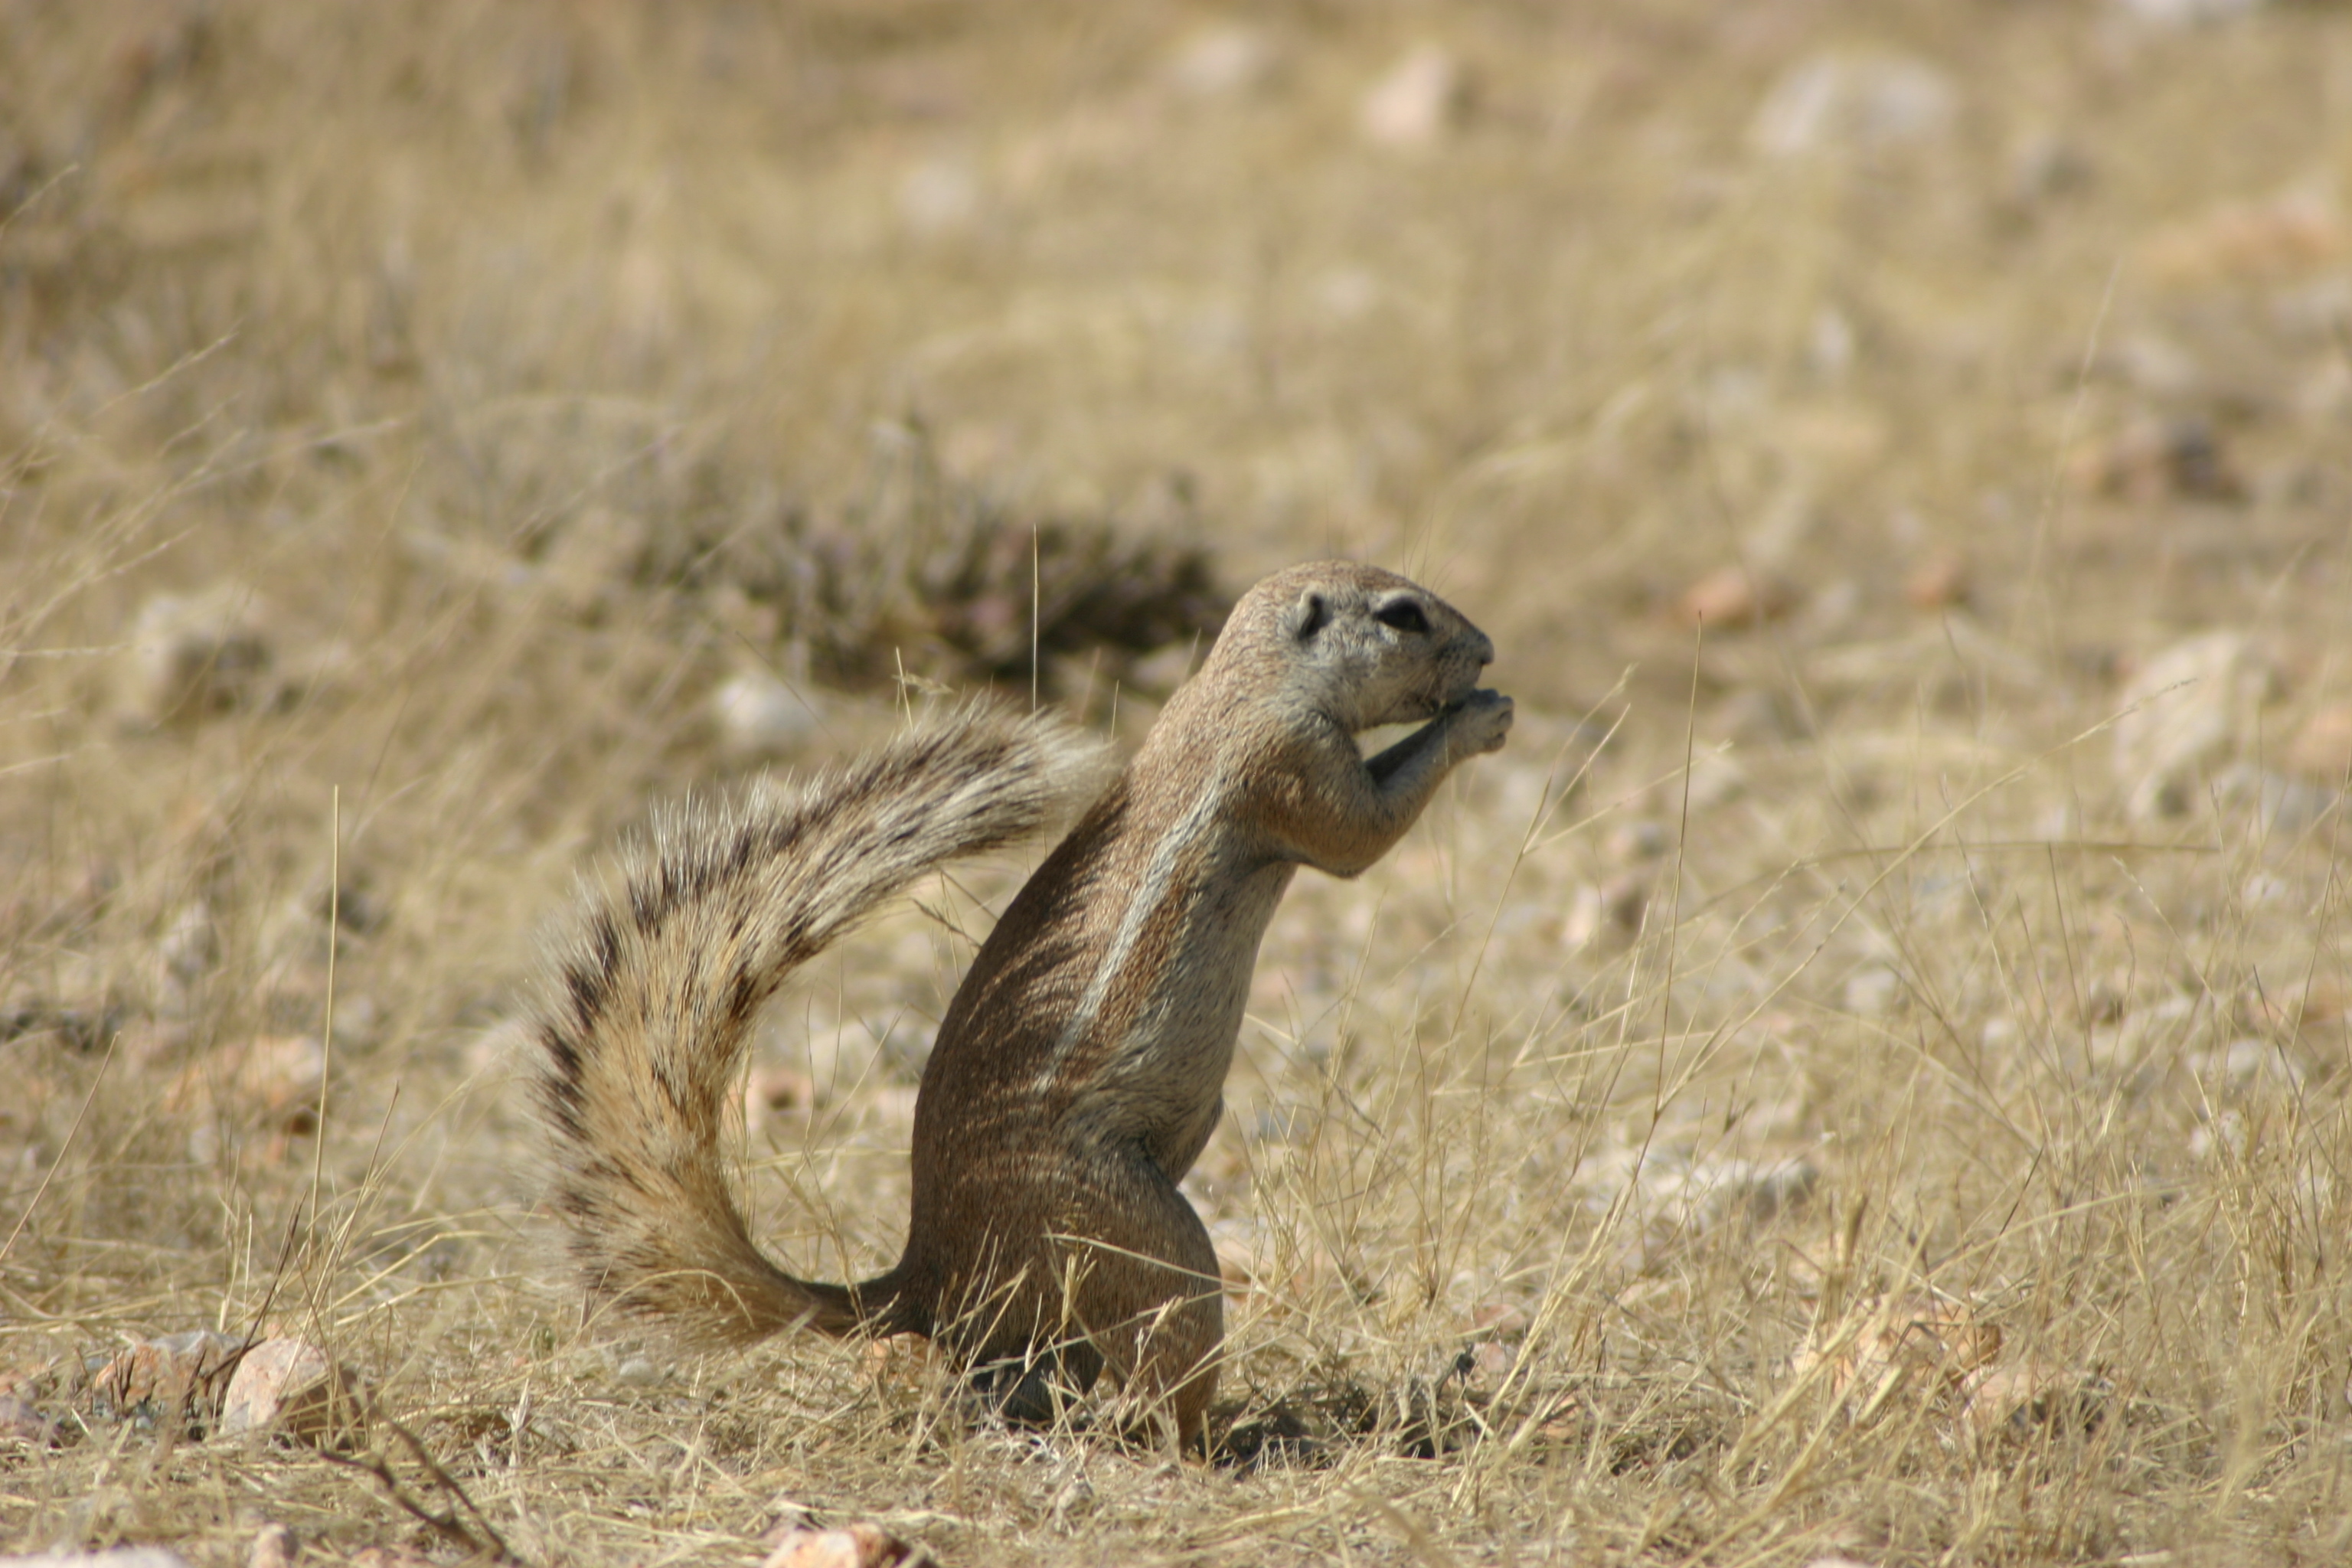 Image of Cape Ground Squirrel